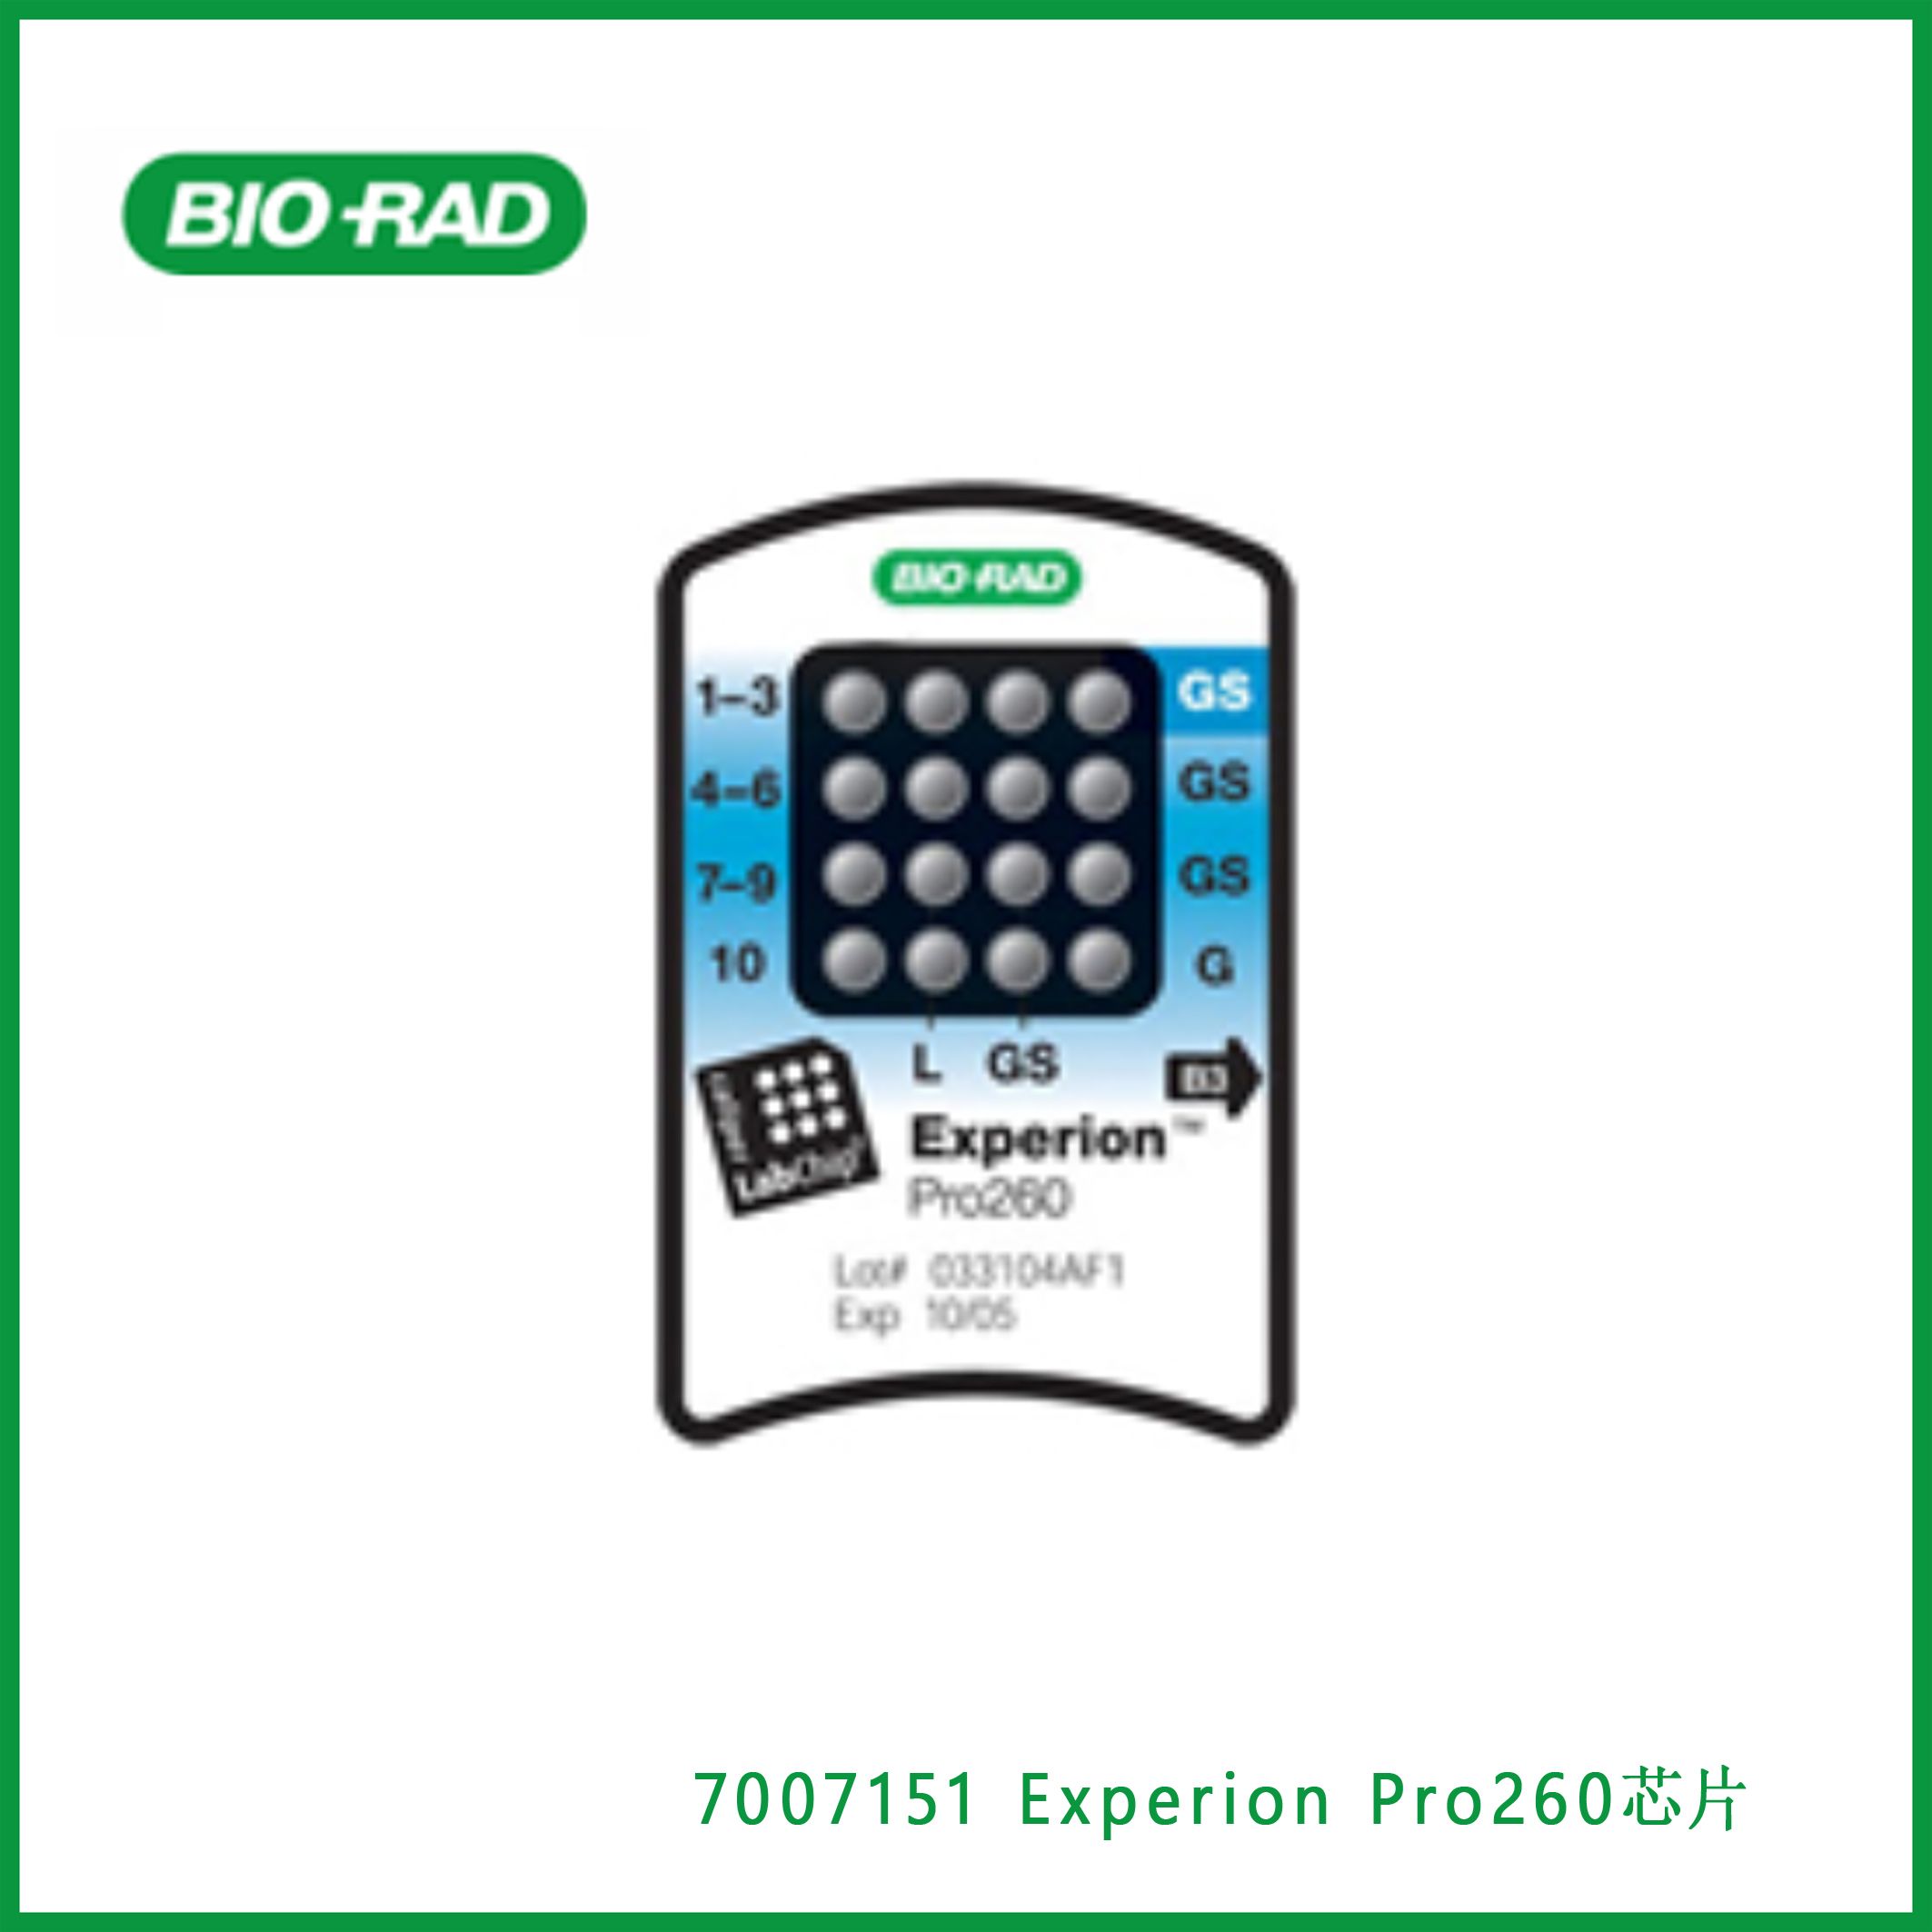 伯乐Bio-Rad7007151 Experion Pro260 Chips，Experion Pro260芯片，现货